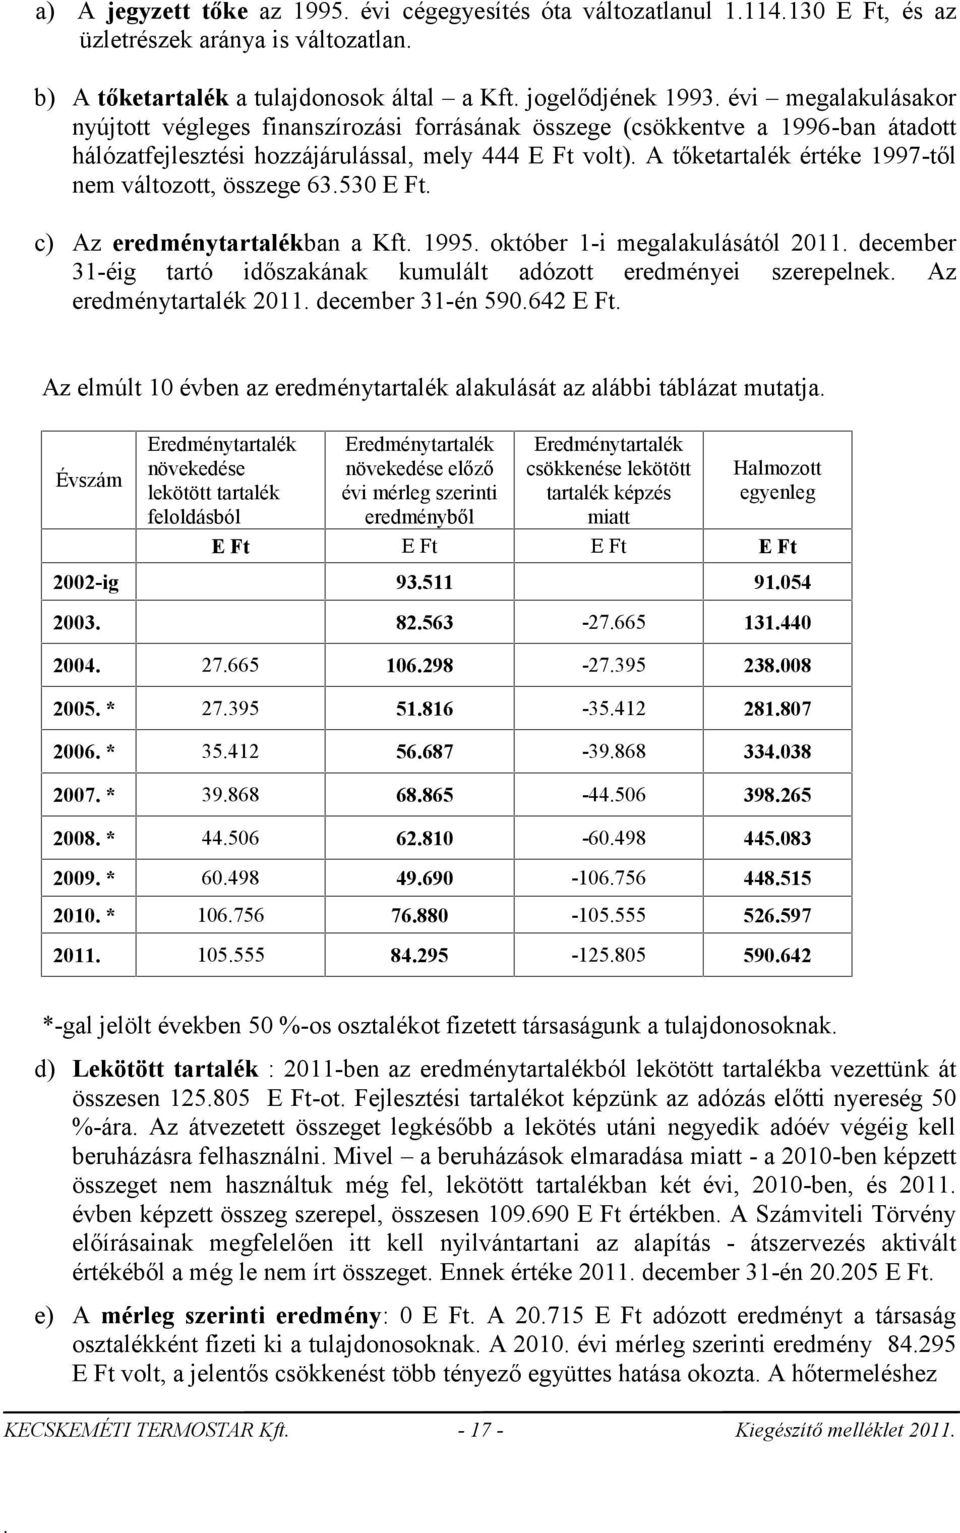 E Ft c) Az eredménytartalékban a Kft 1995 október 1-i megalakulásától 2011 december 31-éig tartó időszakának kumulált adózott eredményei szerepelnek Az eredménytartalék 2011 december 31-én 590642 E